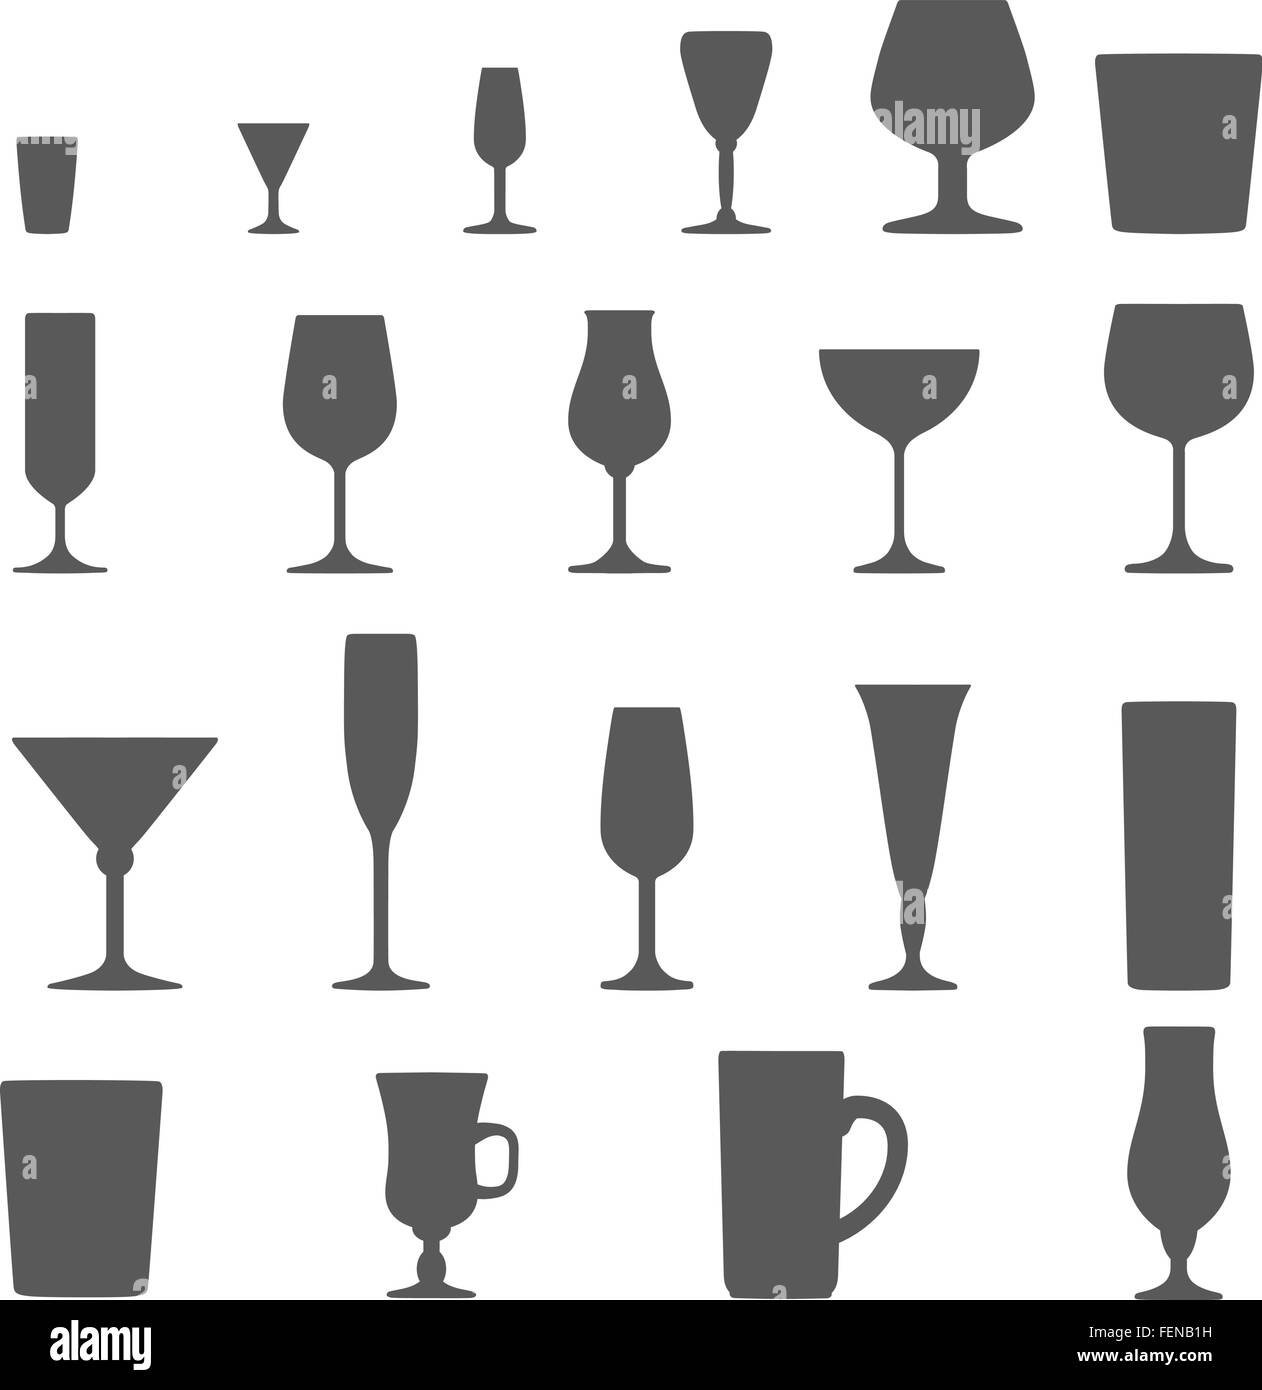 Alcool monocromatica occhiali silhouette di vettore di serie Illustrazione Vettoriale